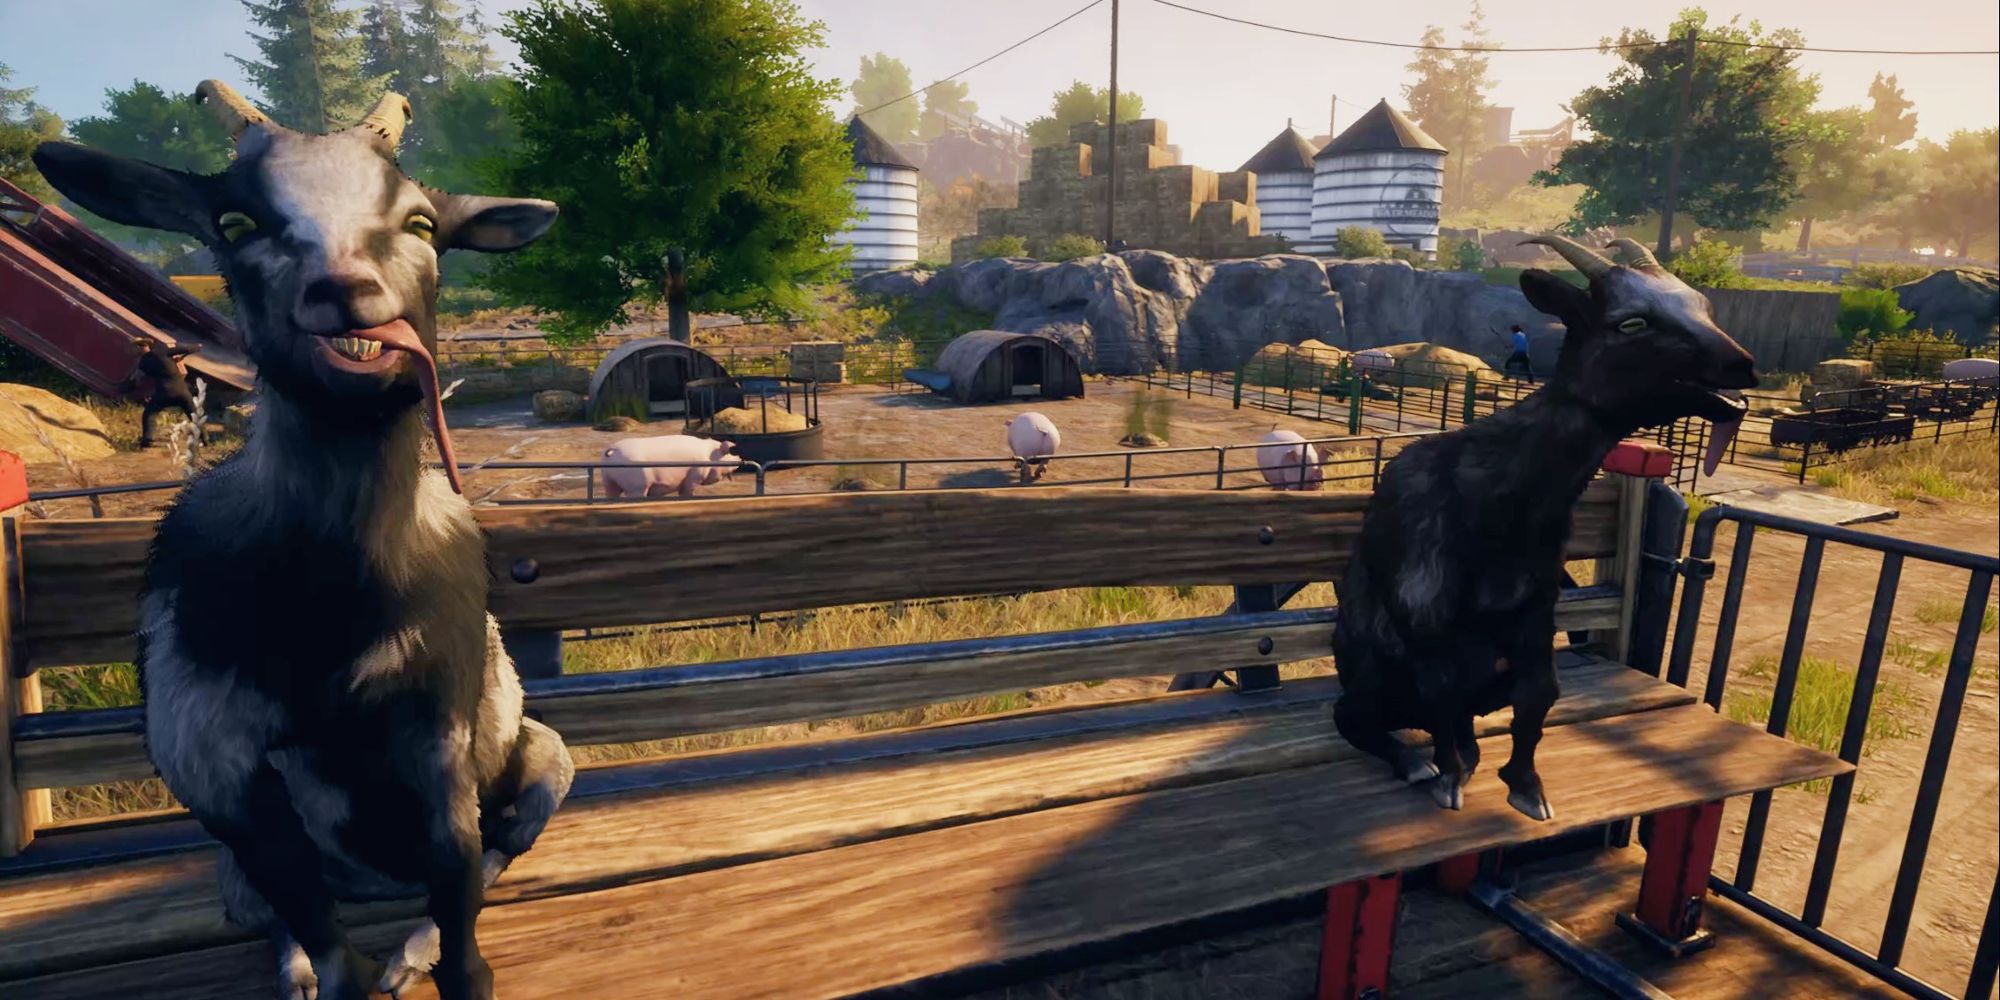 Duas cabras do Goat Simulator 3 sentadas em um carrinho, em paródia da introdução de Skyrim.